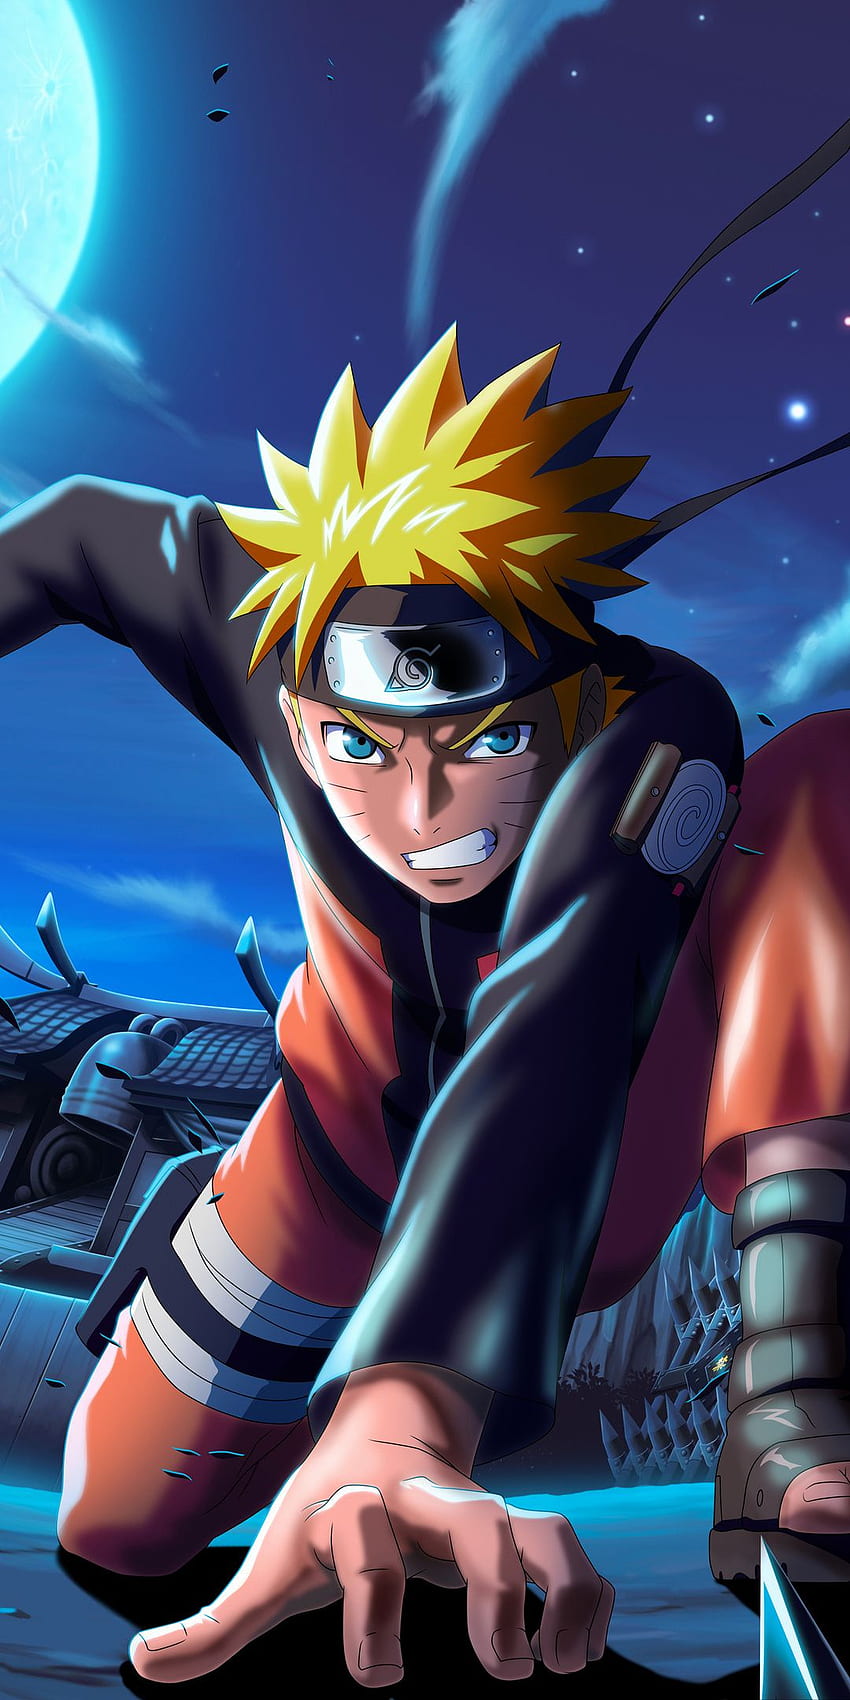 Naruto X Boruto Ninja Voltage là một trò chơi nhập vai đầy hấp dẫn, lấy đề tài bộ truyện tranh nổi tiếng Naruto và Boruto. Hãy xem ngay hình ảnh liên quan để nhận thấy sự hấp dẫn của trò chơi này!